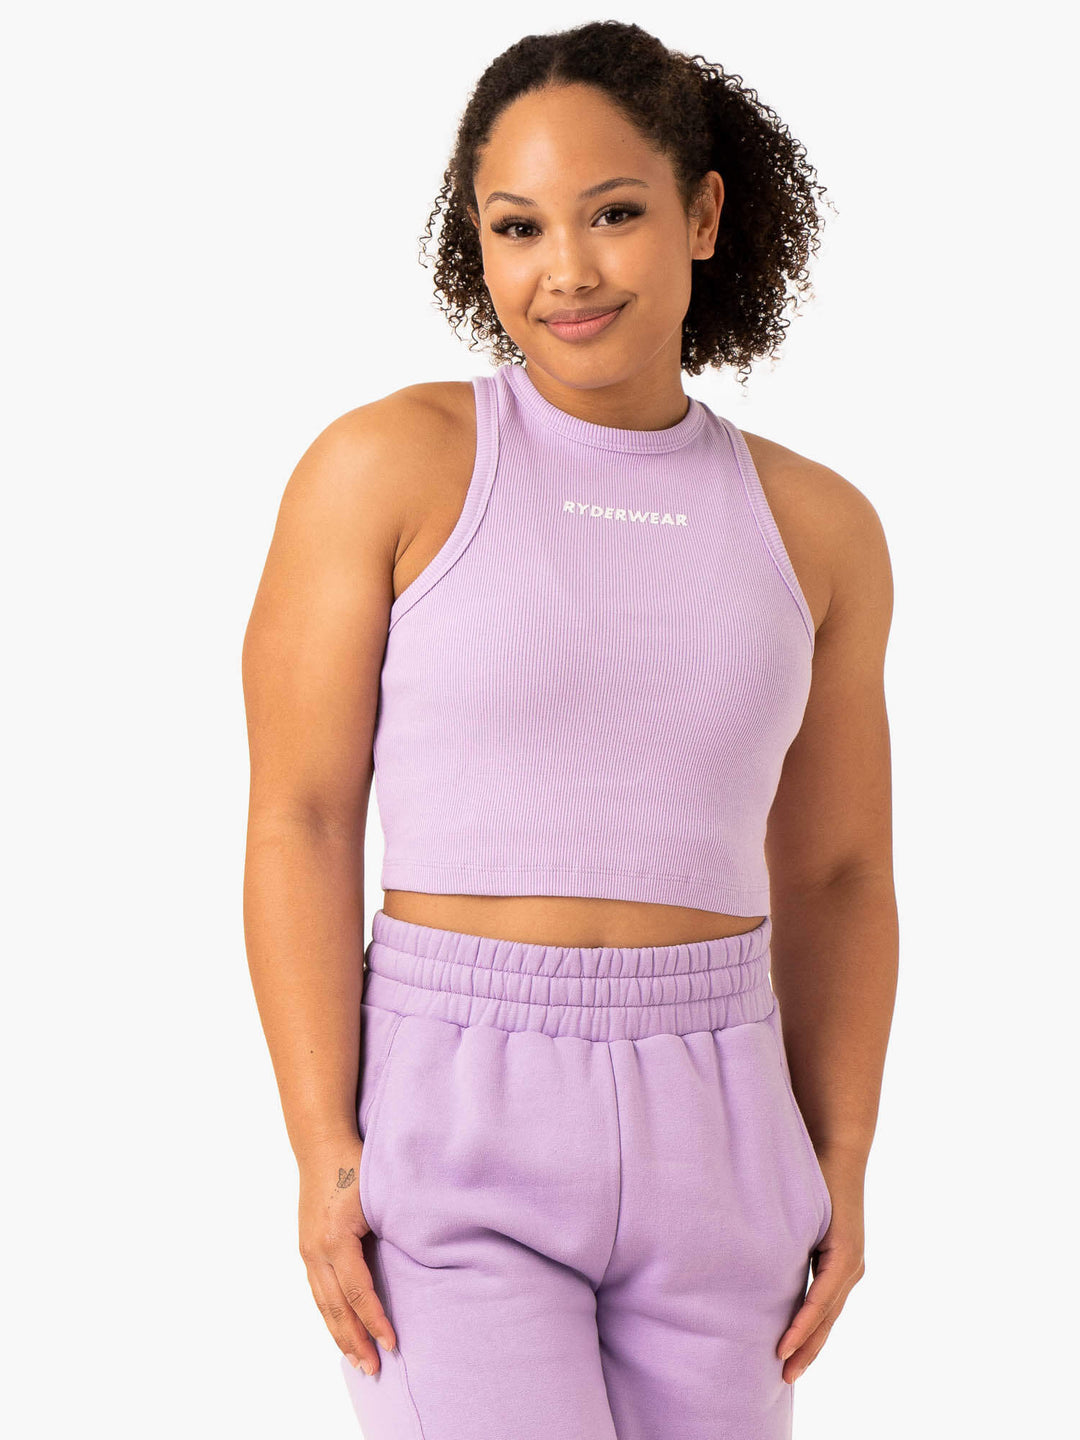 Sideline Rib Crop Tank - Lilac Clothing Ryderwear 